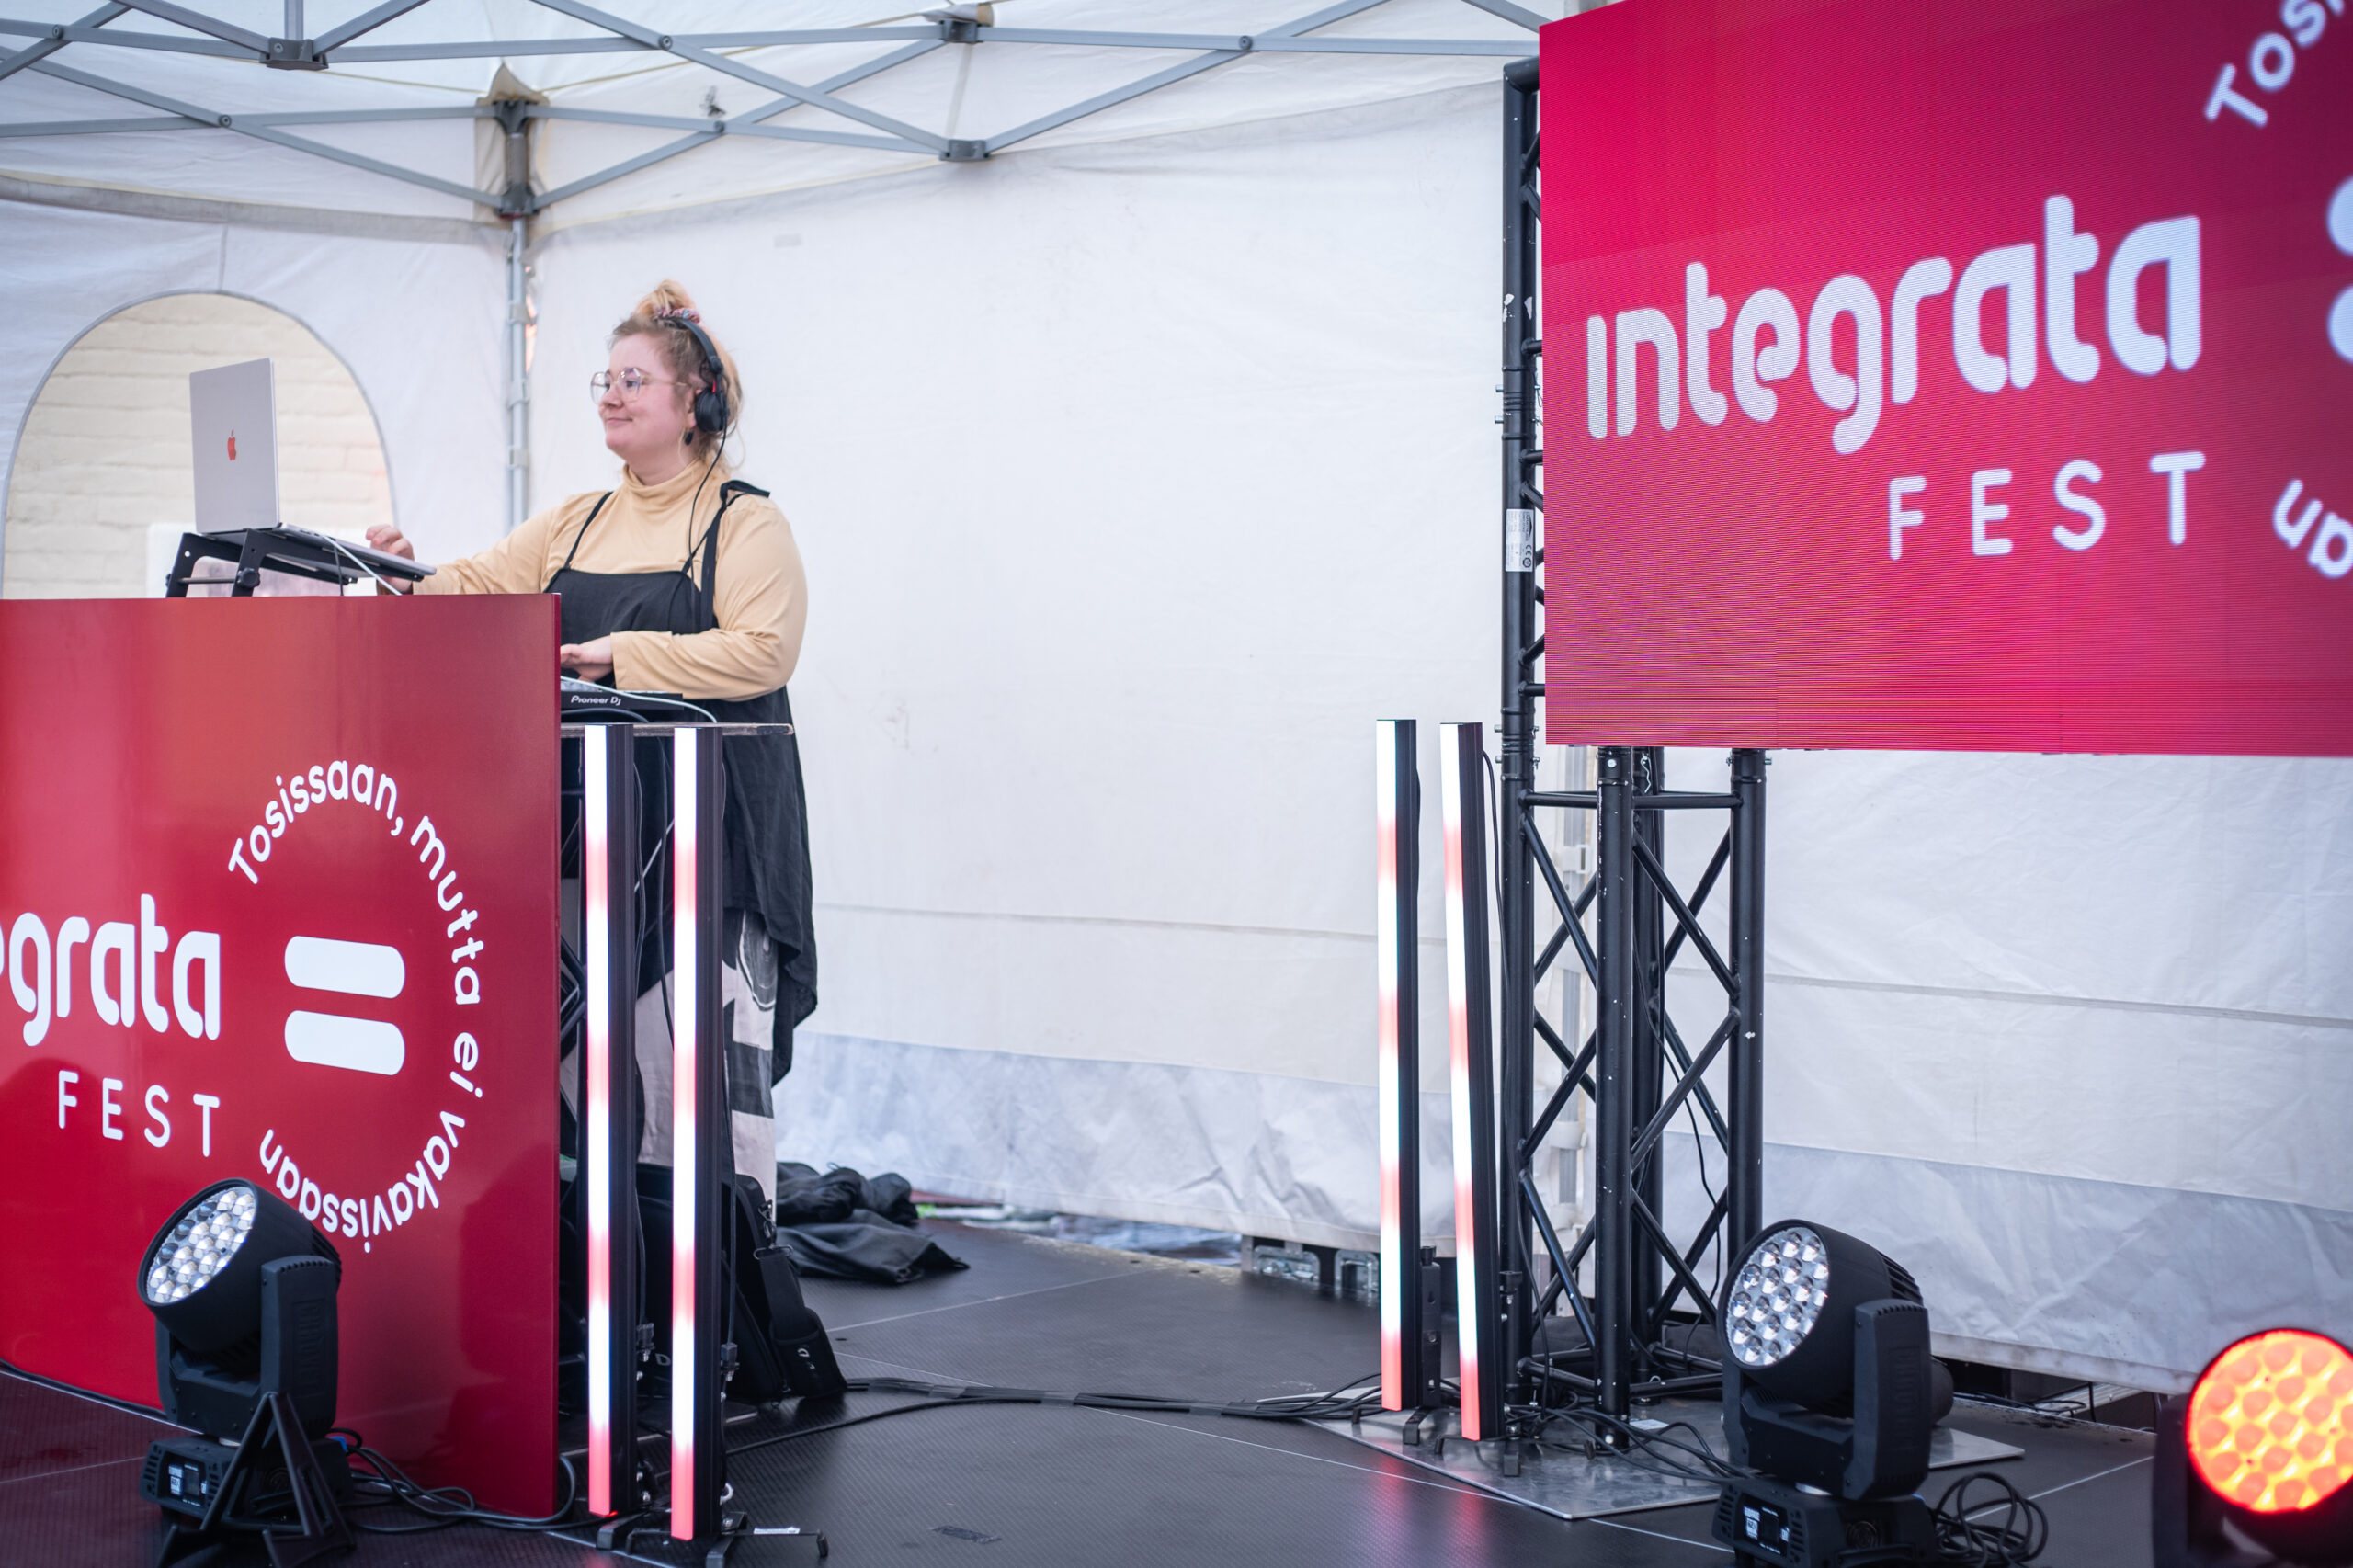 IntegrataFest – Katso kuvat